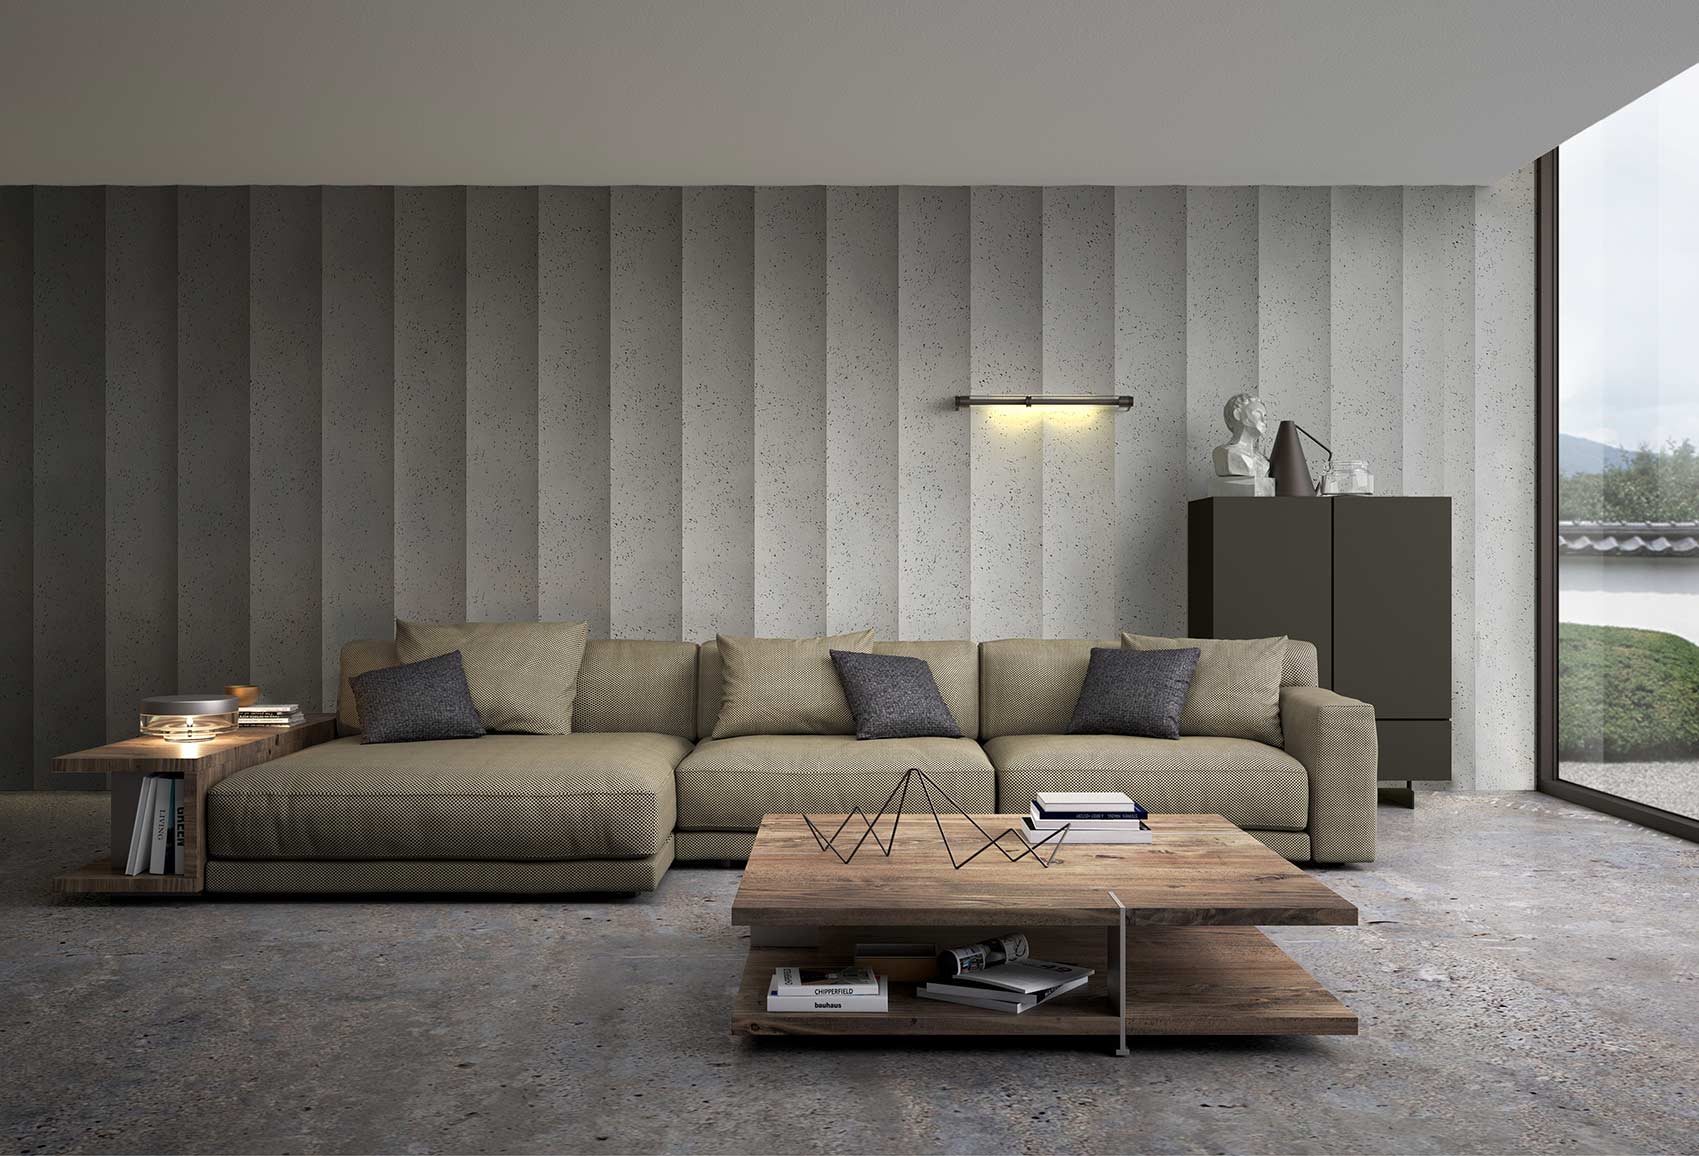 Panel decorativo NEOS imitación cemento en una pared de interior de salón de una casa